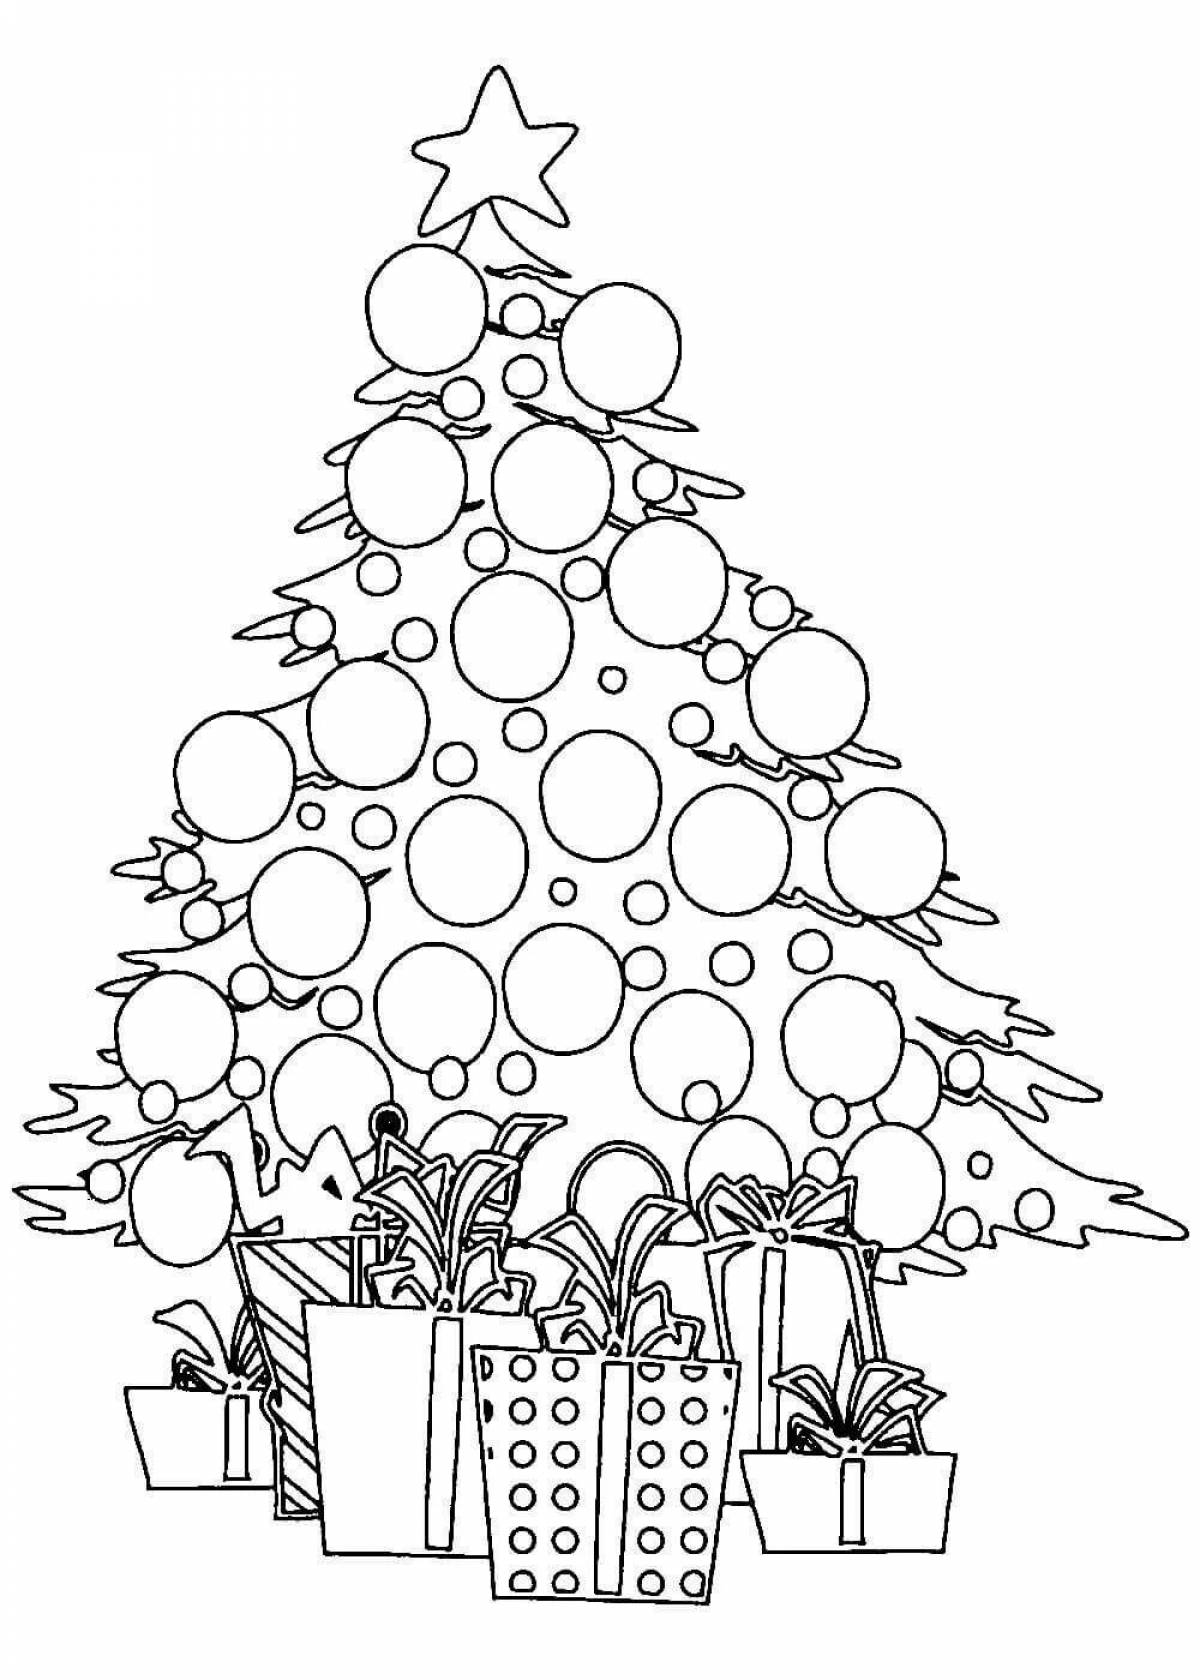 Adorable Christmas tree with balls for kids